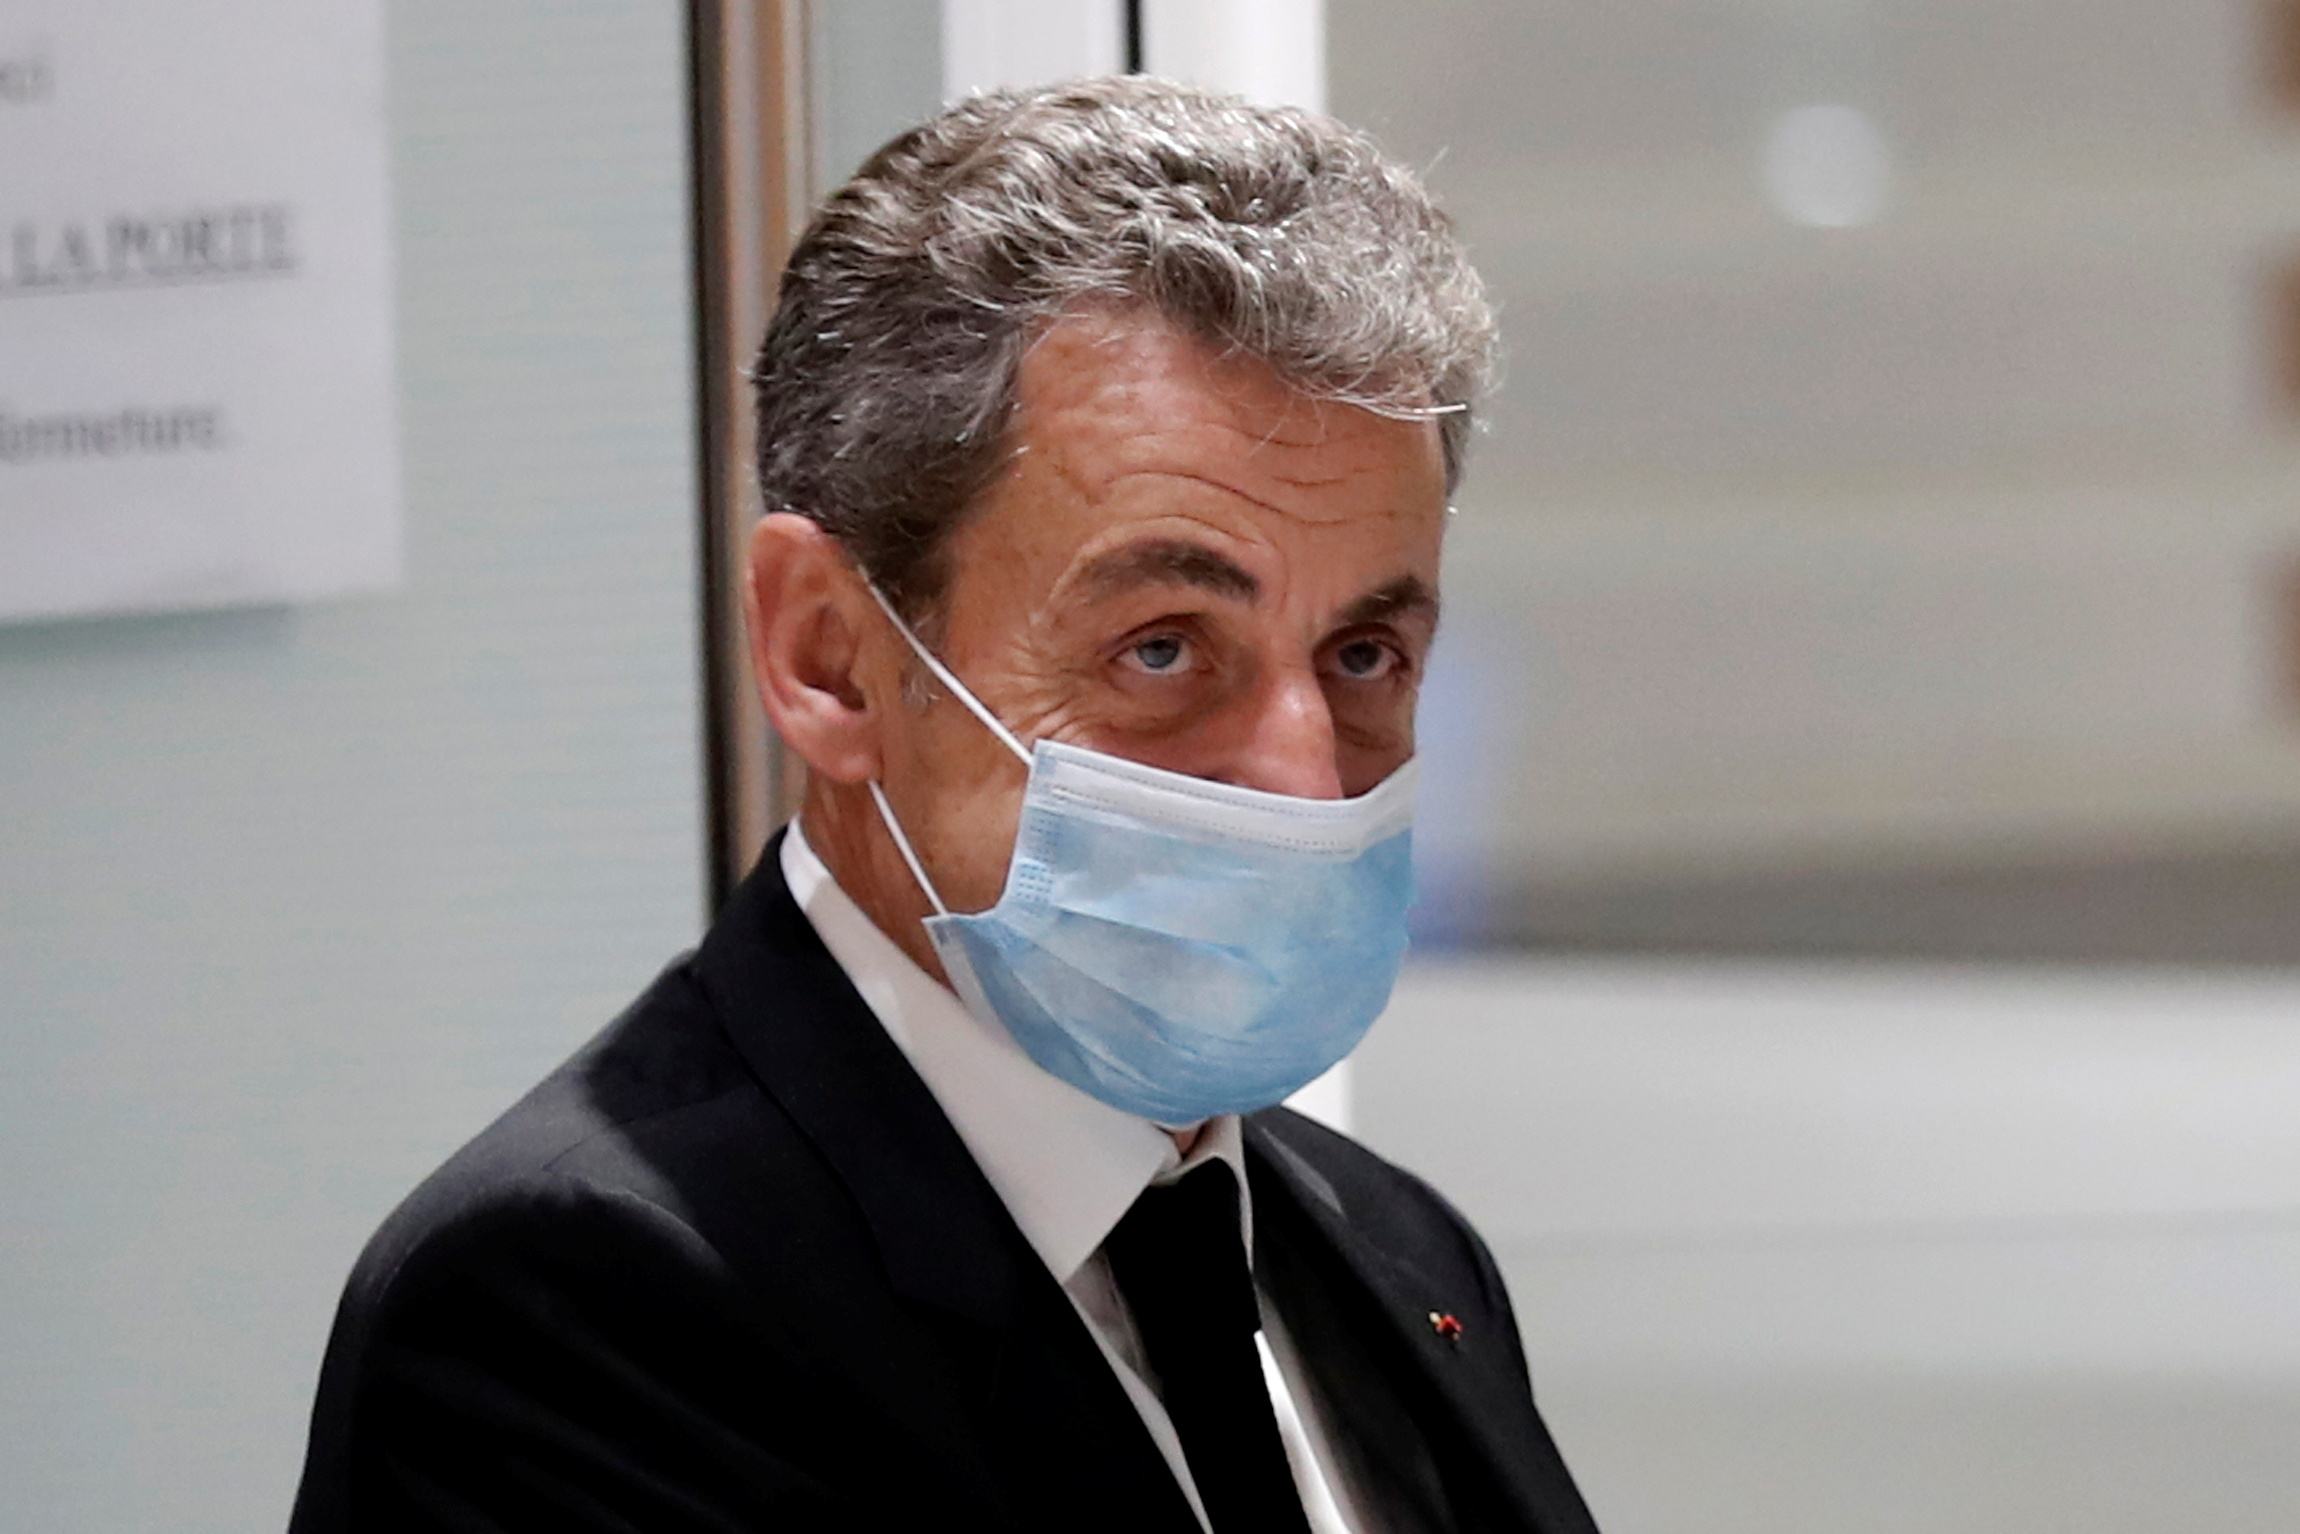 Jugement attendu pour Nicolas Sarkozy dans l'affaire des "écoutes"